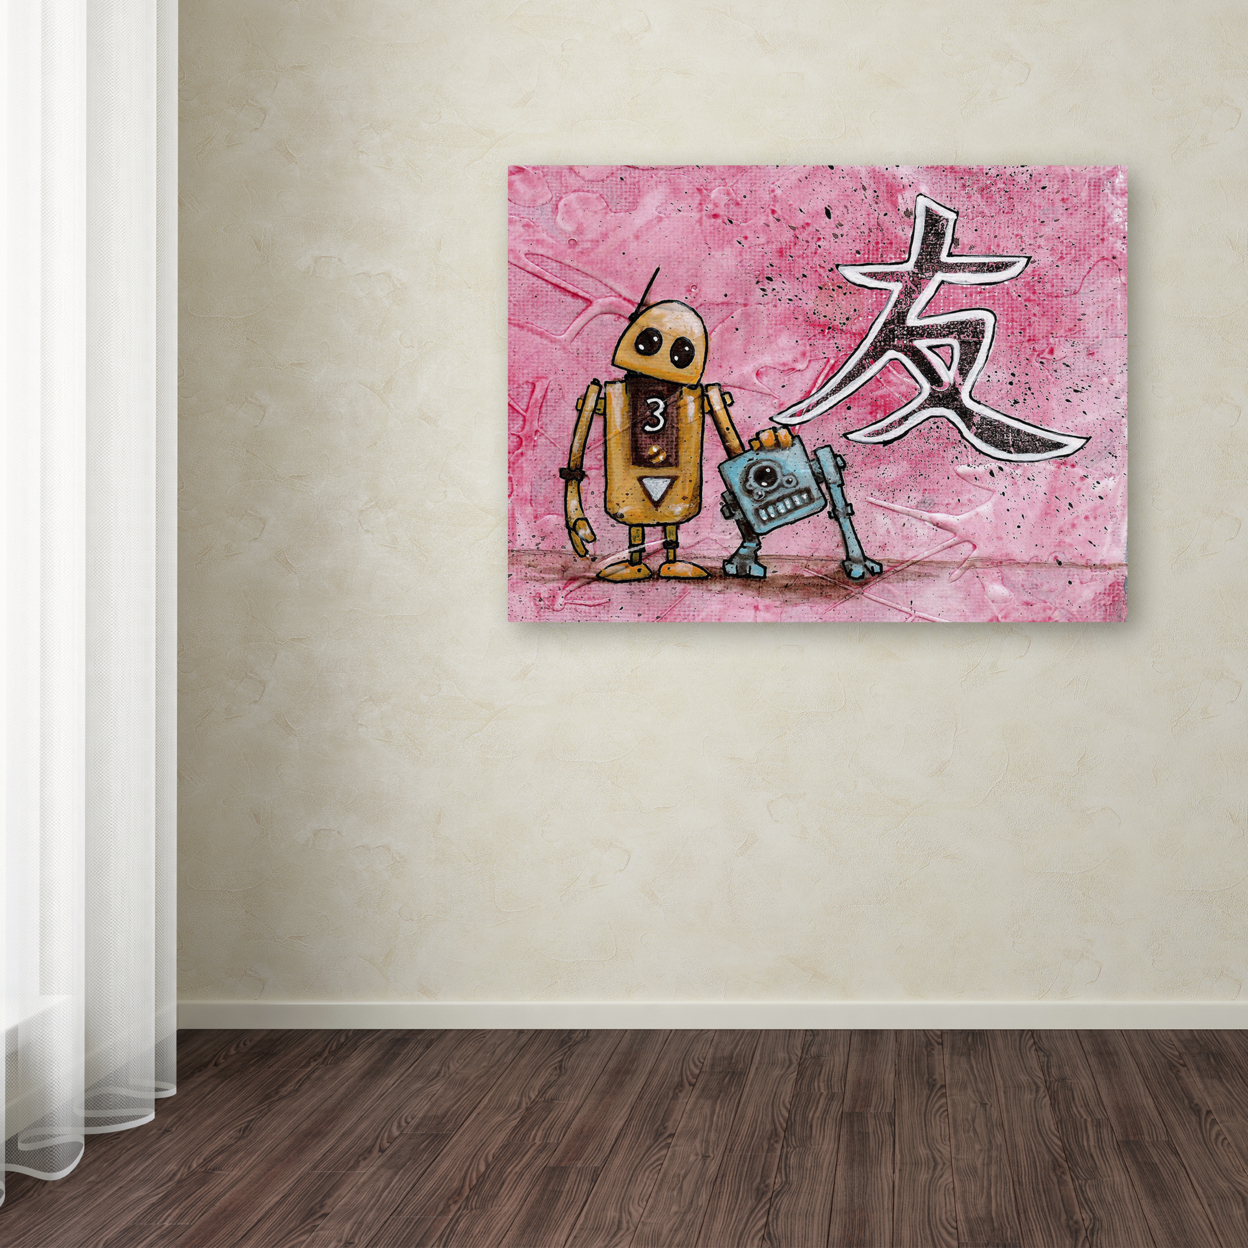 Craig Snodgrass 'Friends' Canvas Wall Art 35 X 47 Inches